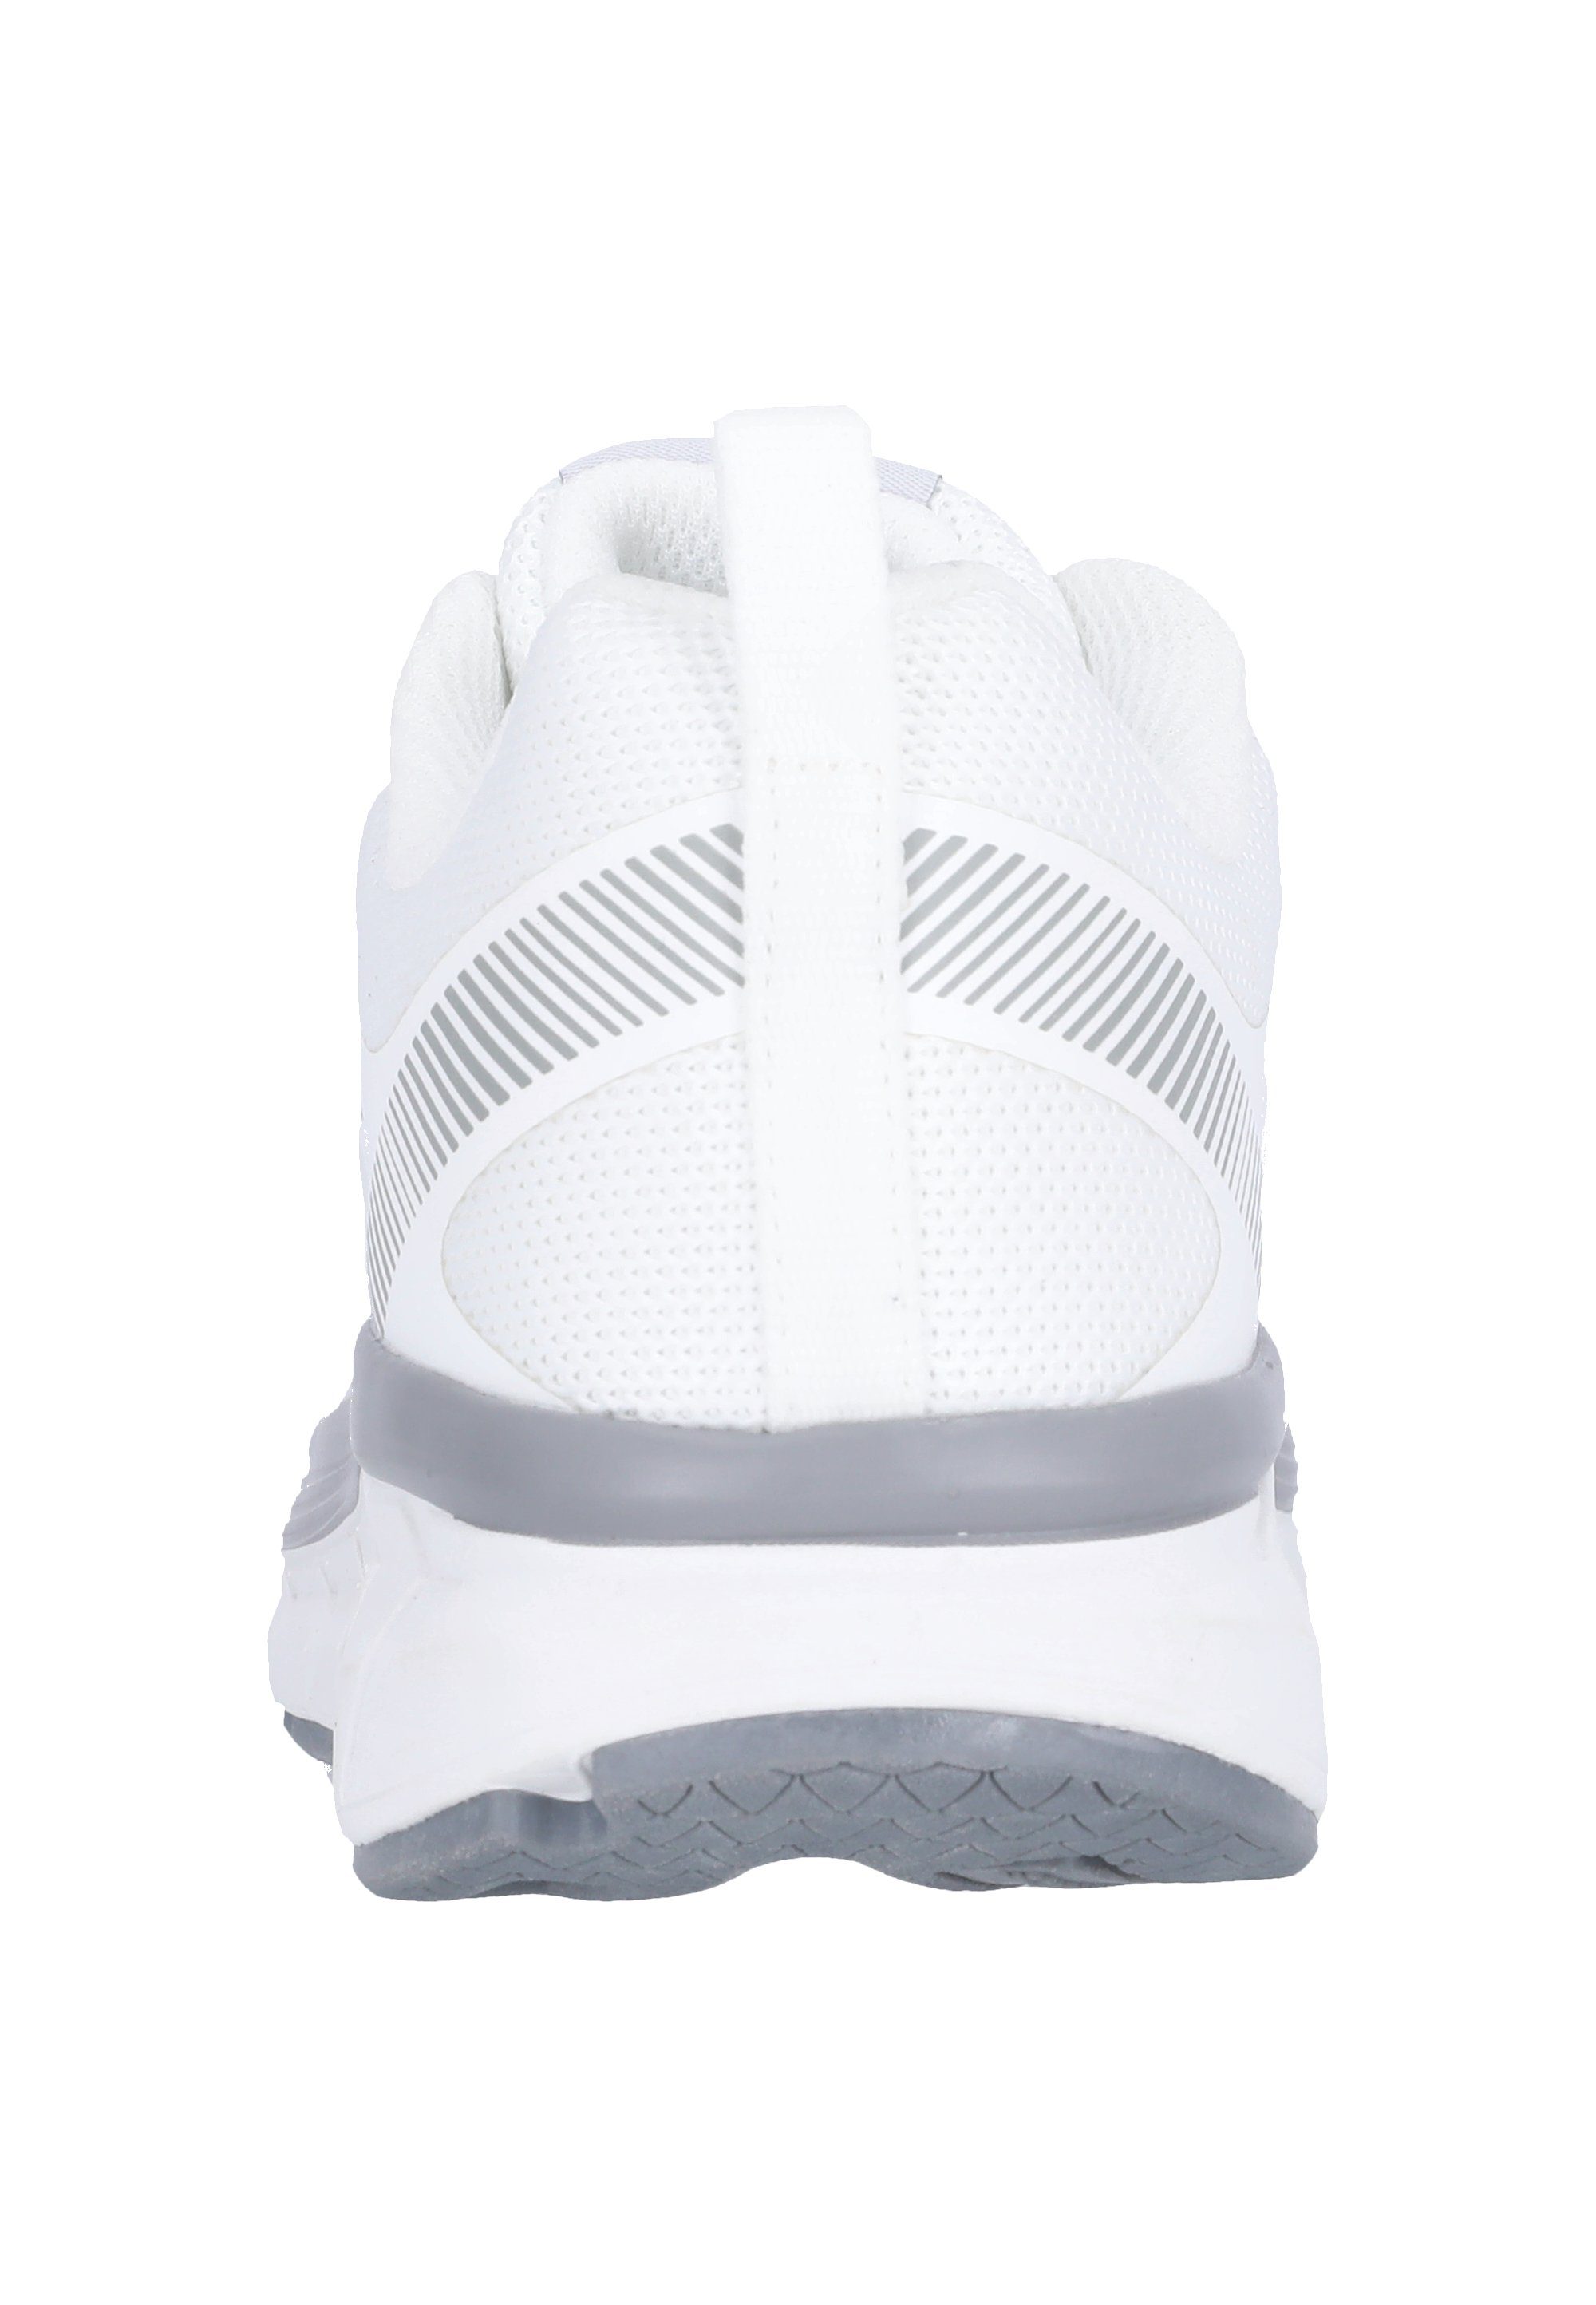 weiß-silberfarben mit Dämpfung Fortlian ENDURANCE Sneaker komfortabler